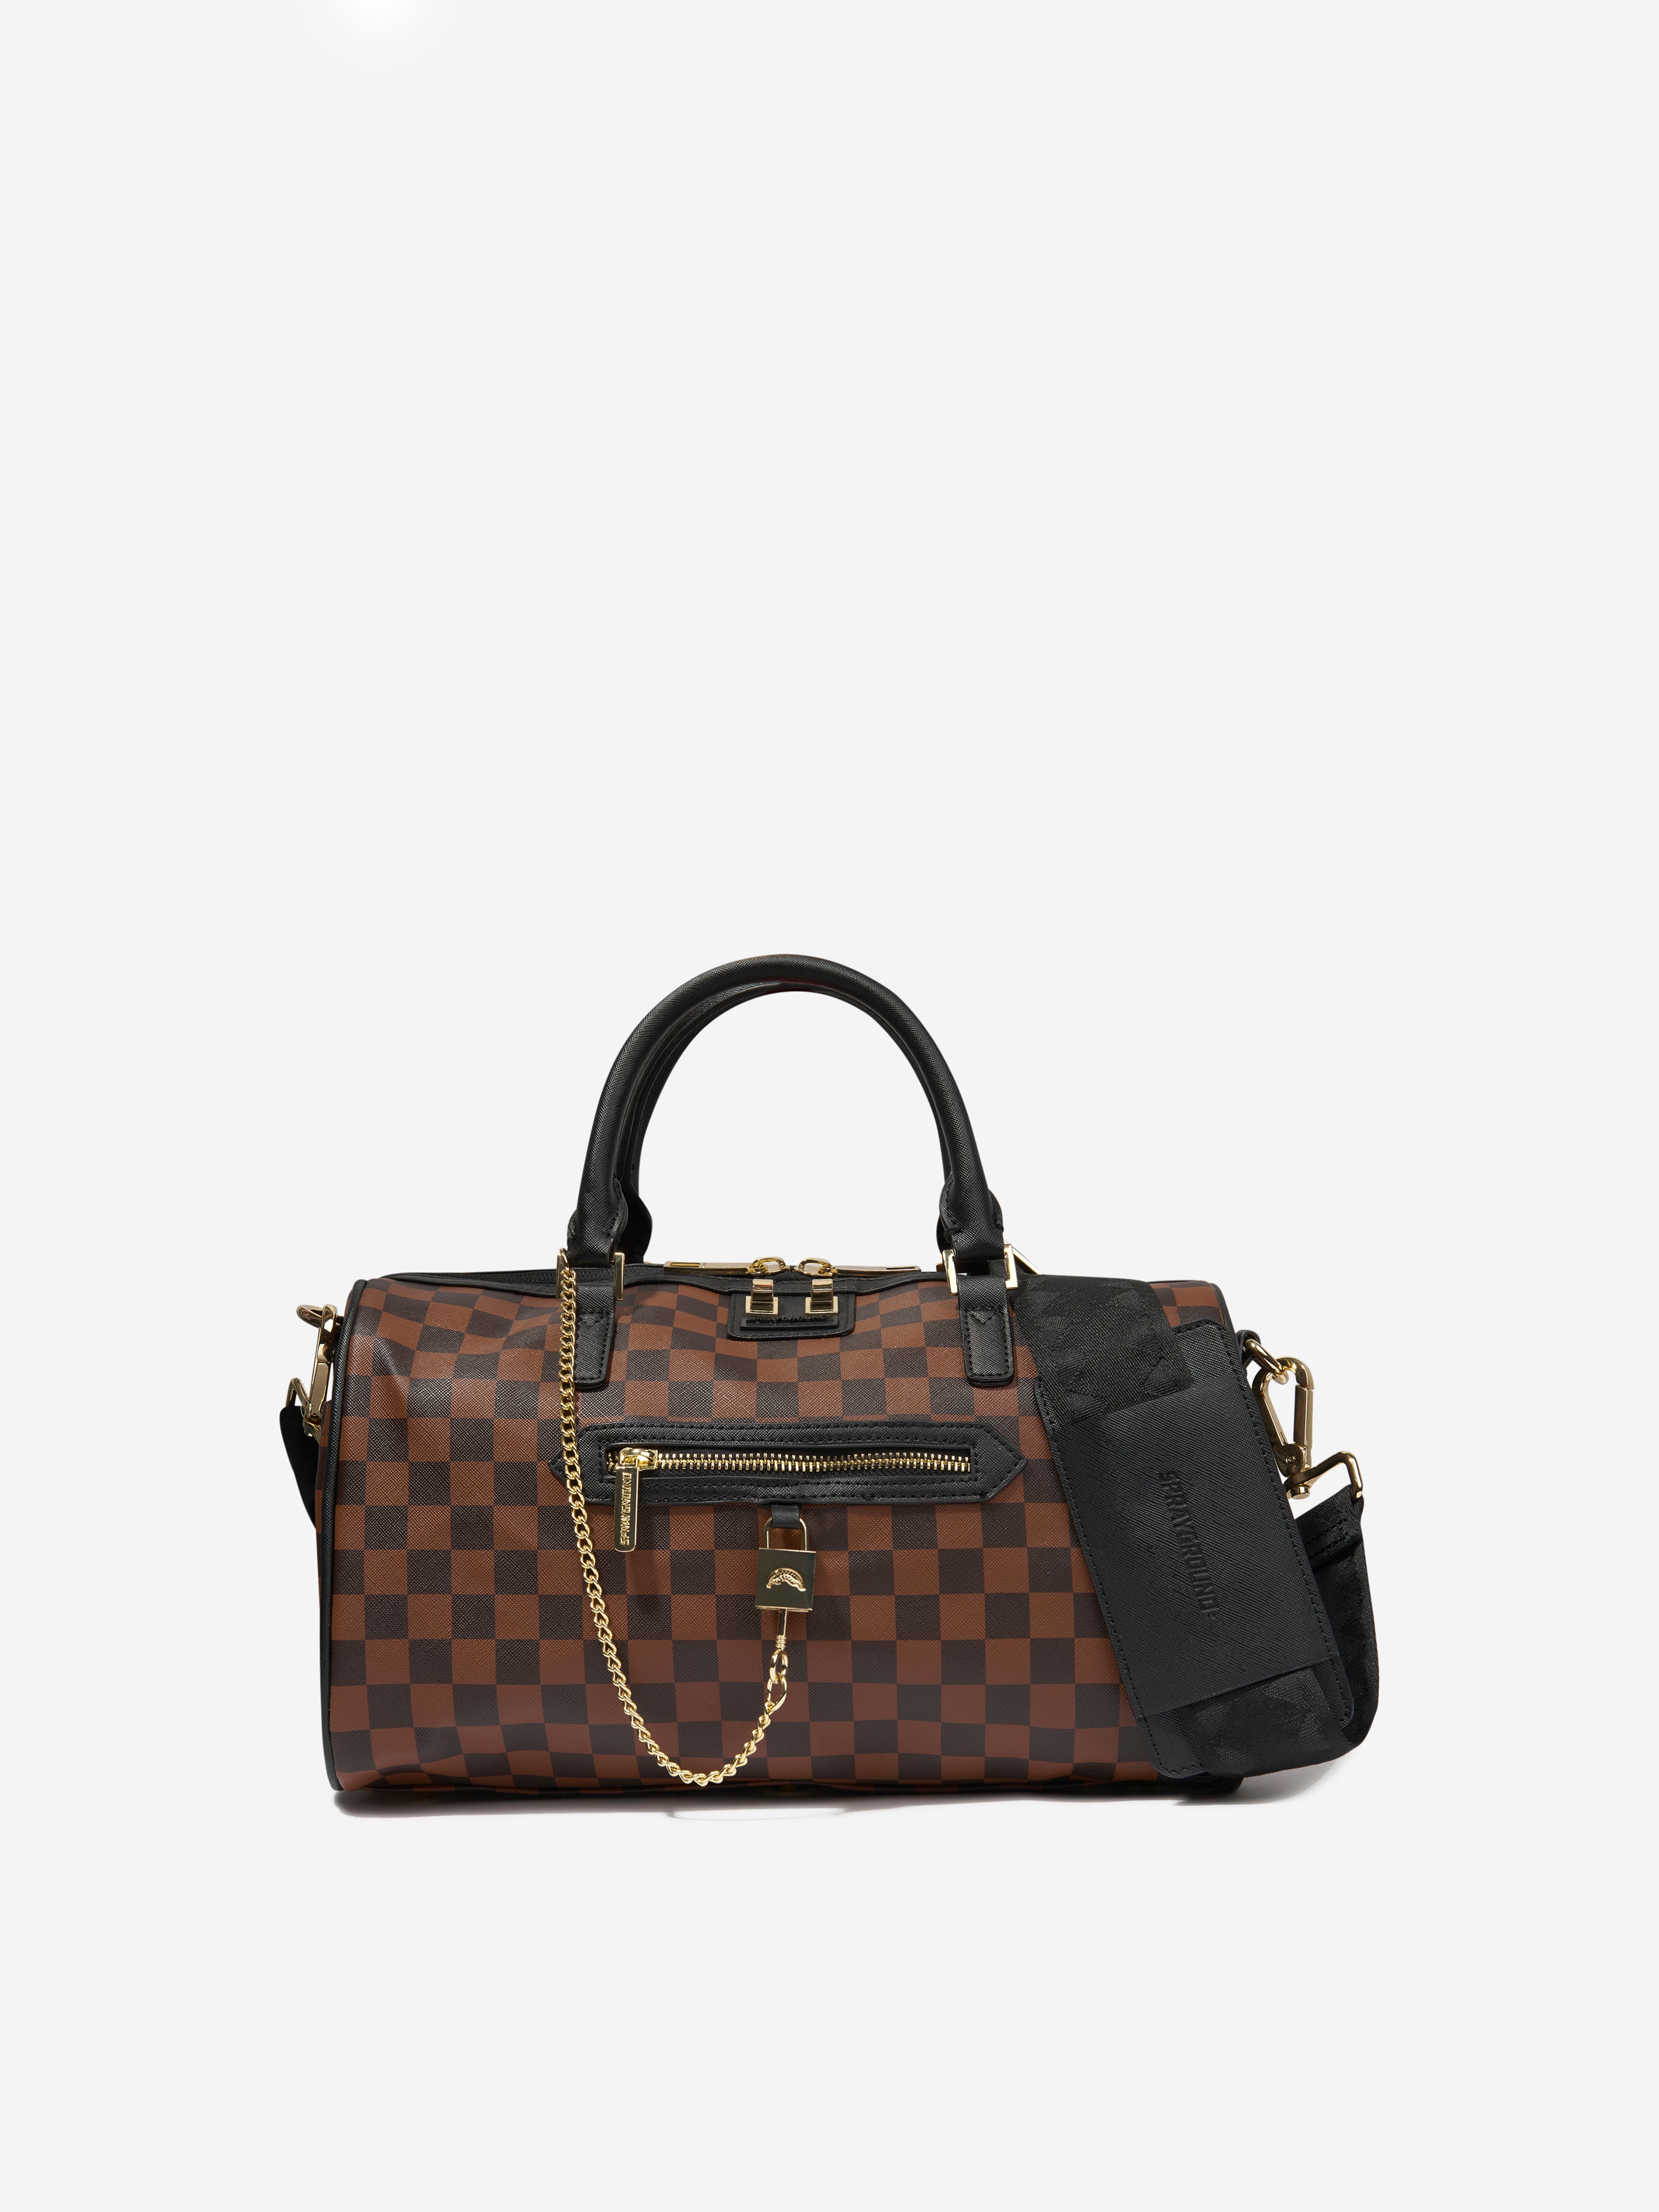 HOLD BC Louis Vuitton Duffle Bag Monogram Canvas  THE PURSE AFFAIR